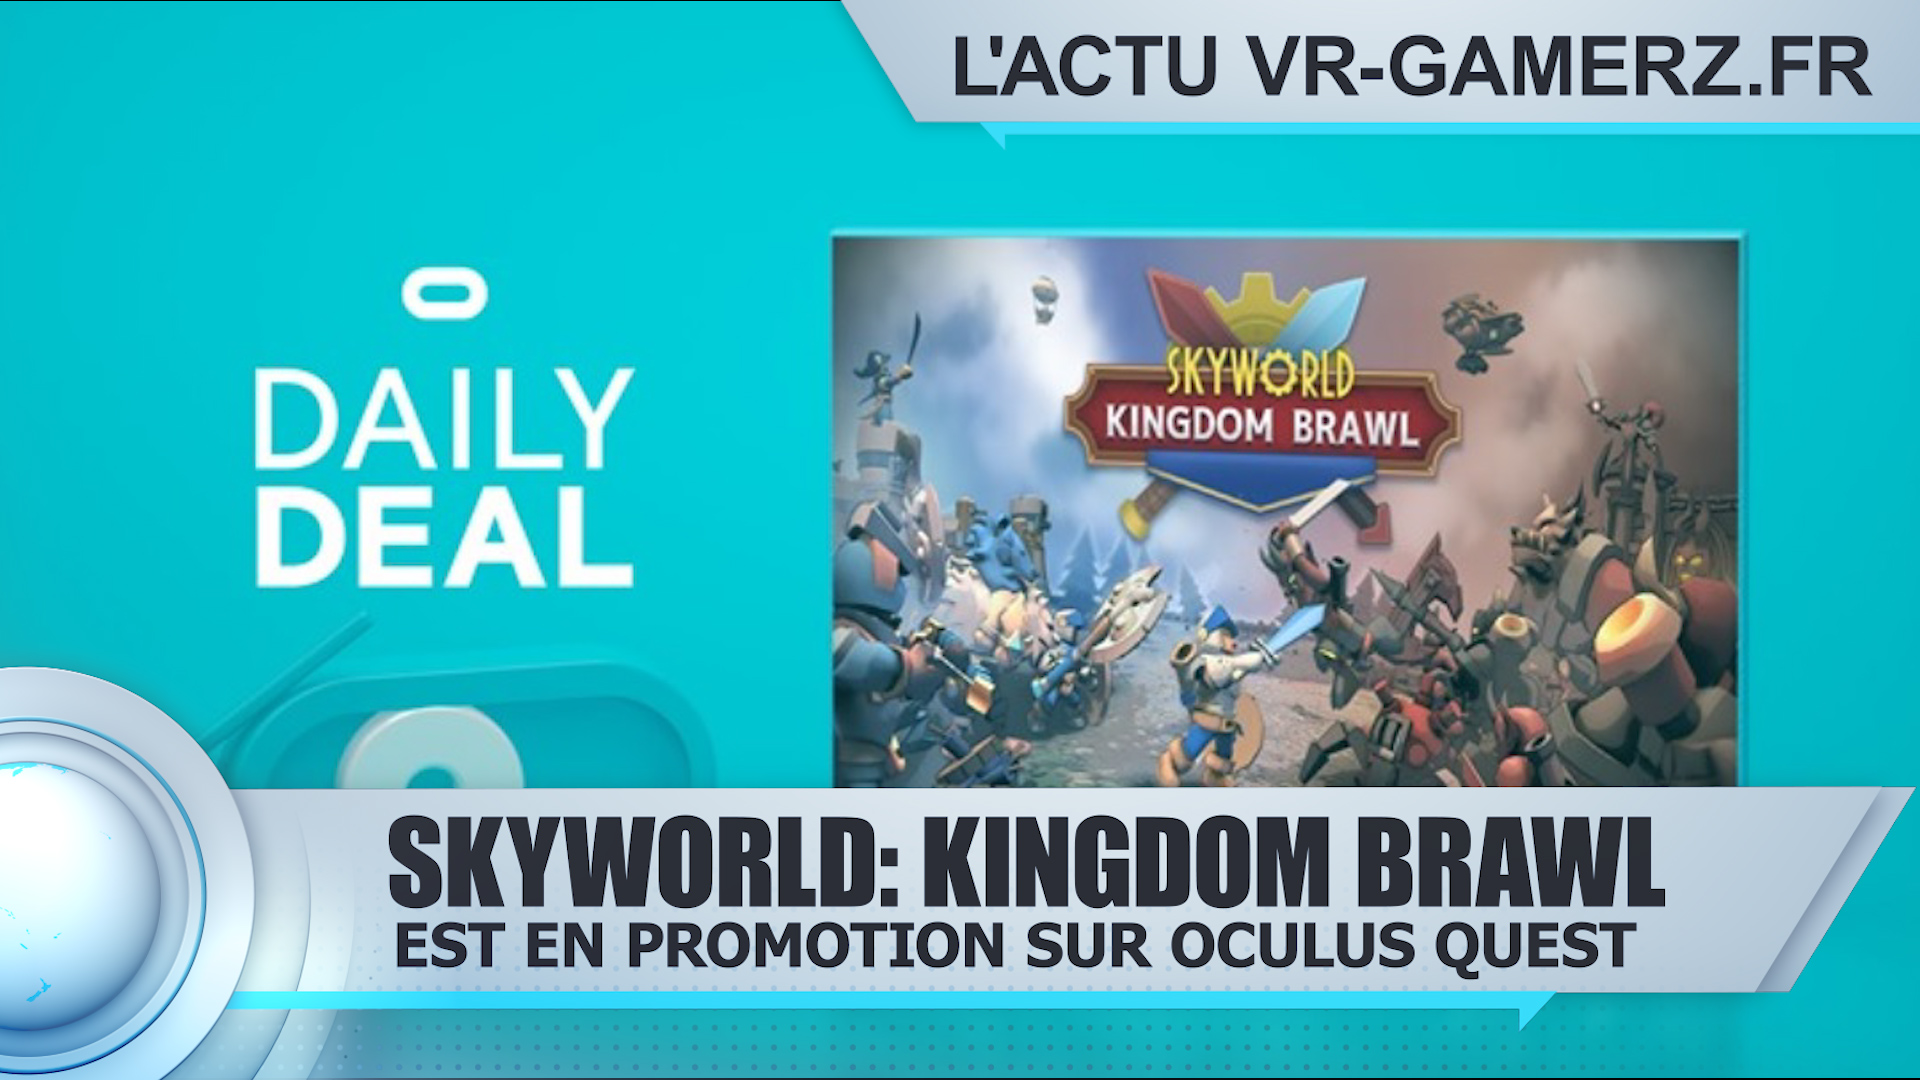 Skyworld: Kingdom Brawl est en promotion sur Oculus quest